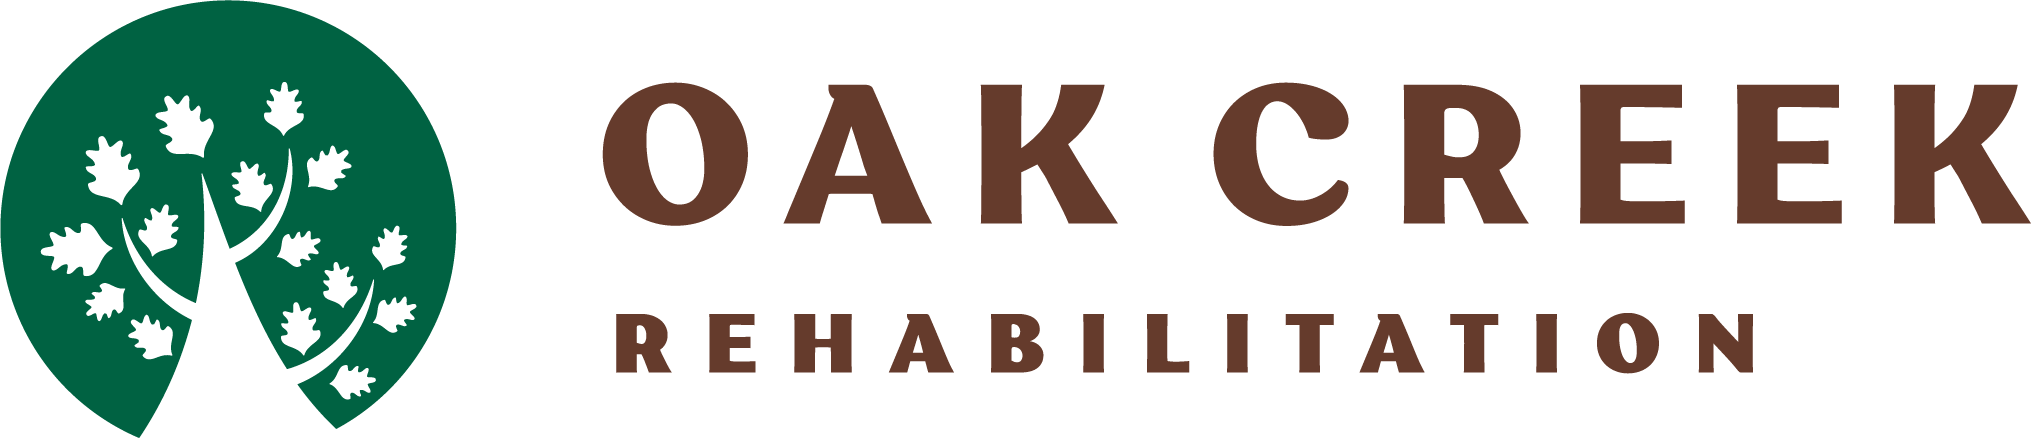 Oak Creek Rehabilitation logo